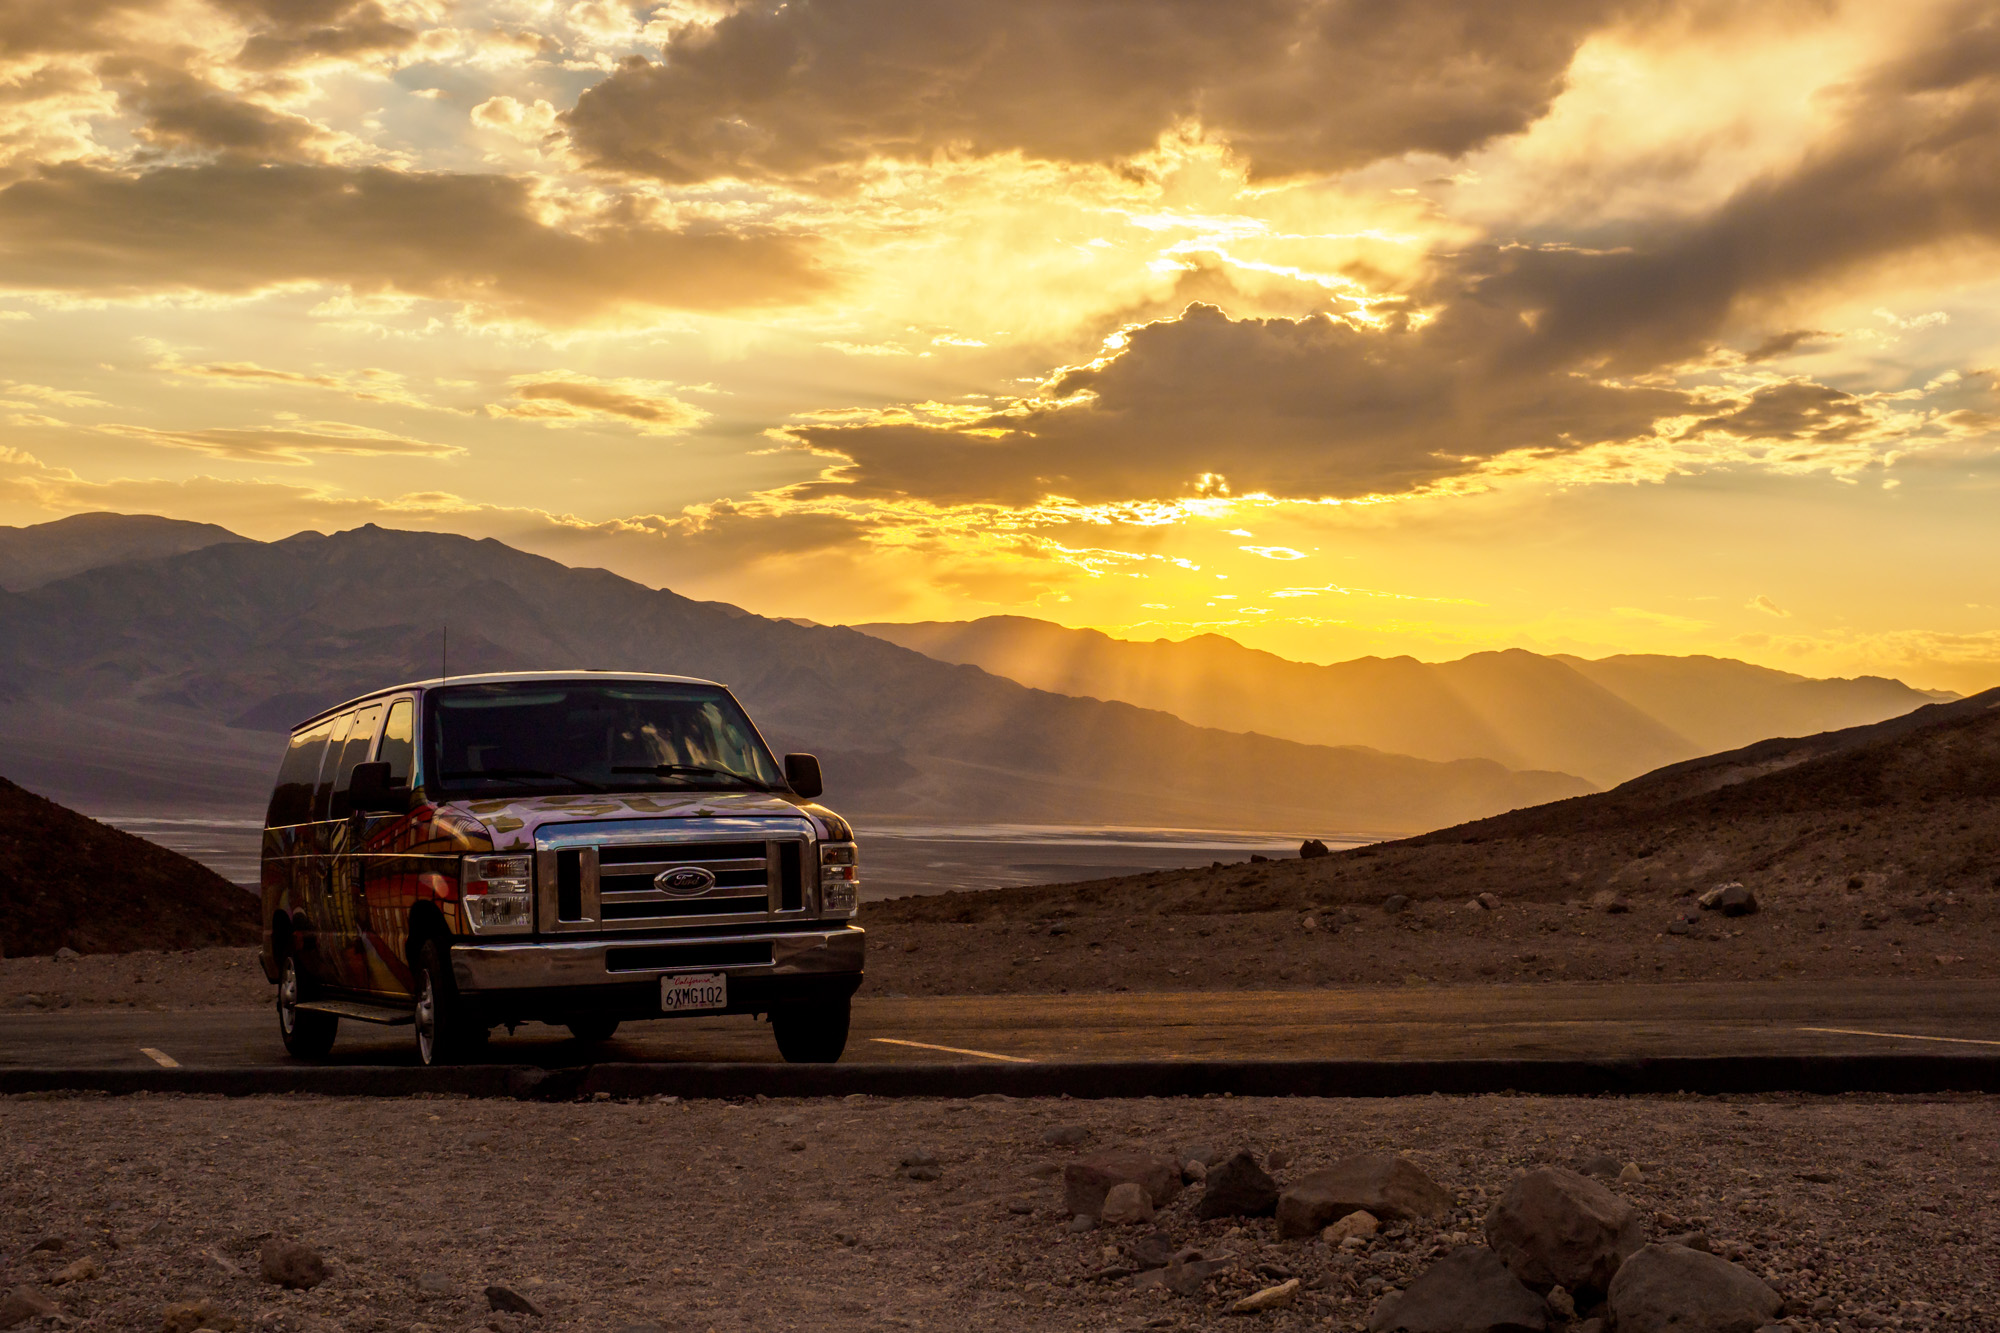 Death Valley Nationalpark - Artist Drive